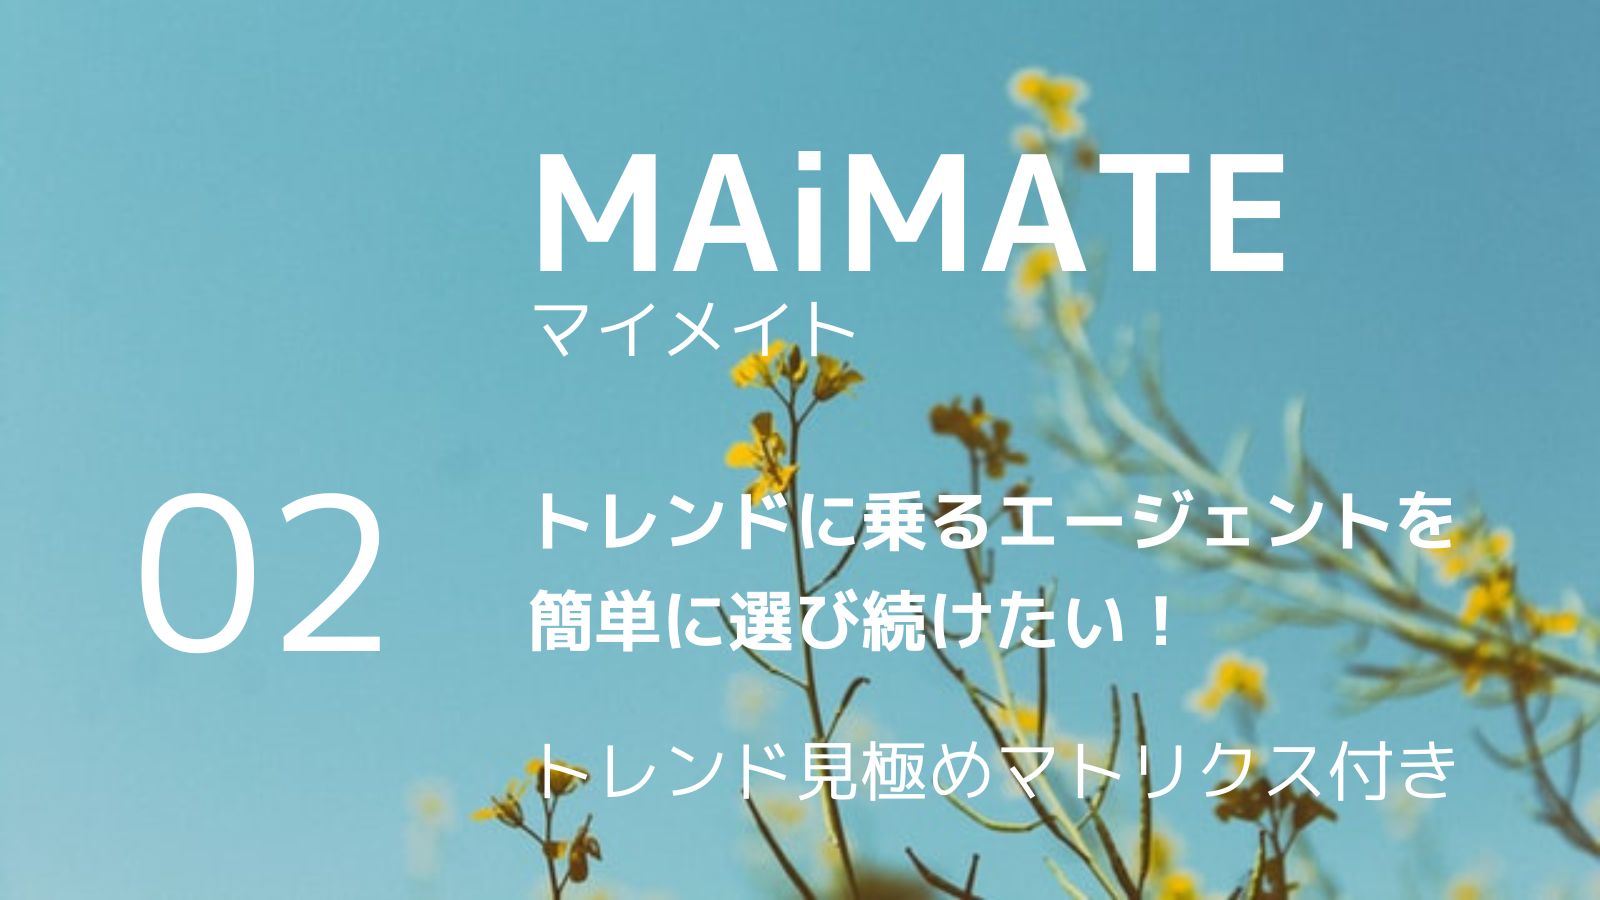 【MAiMATE】マイメイト トレンドに乗るエージェント選び 02